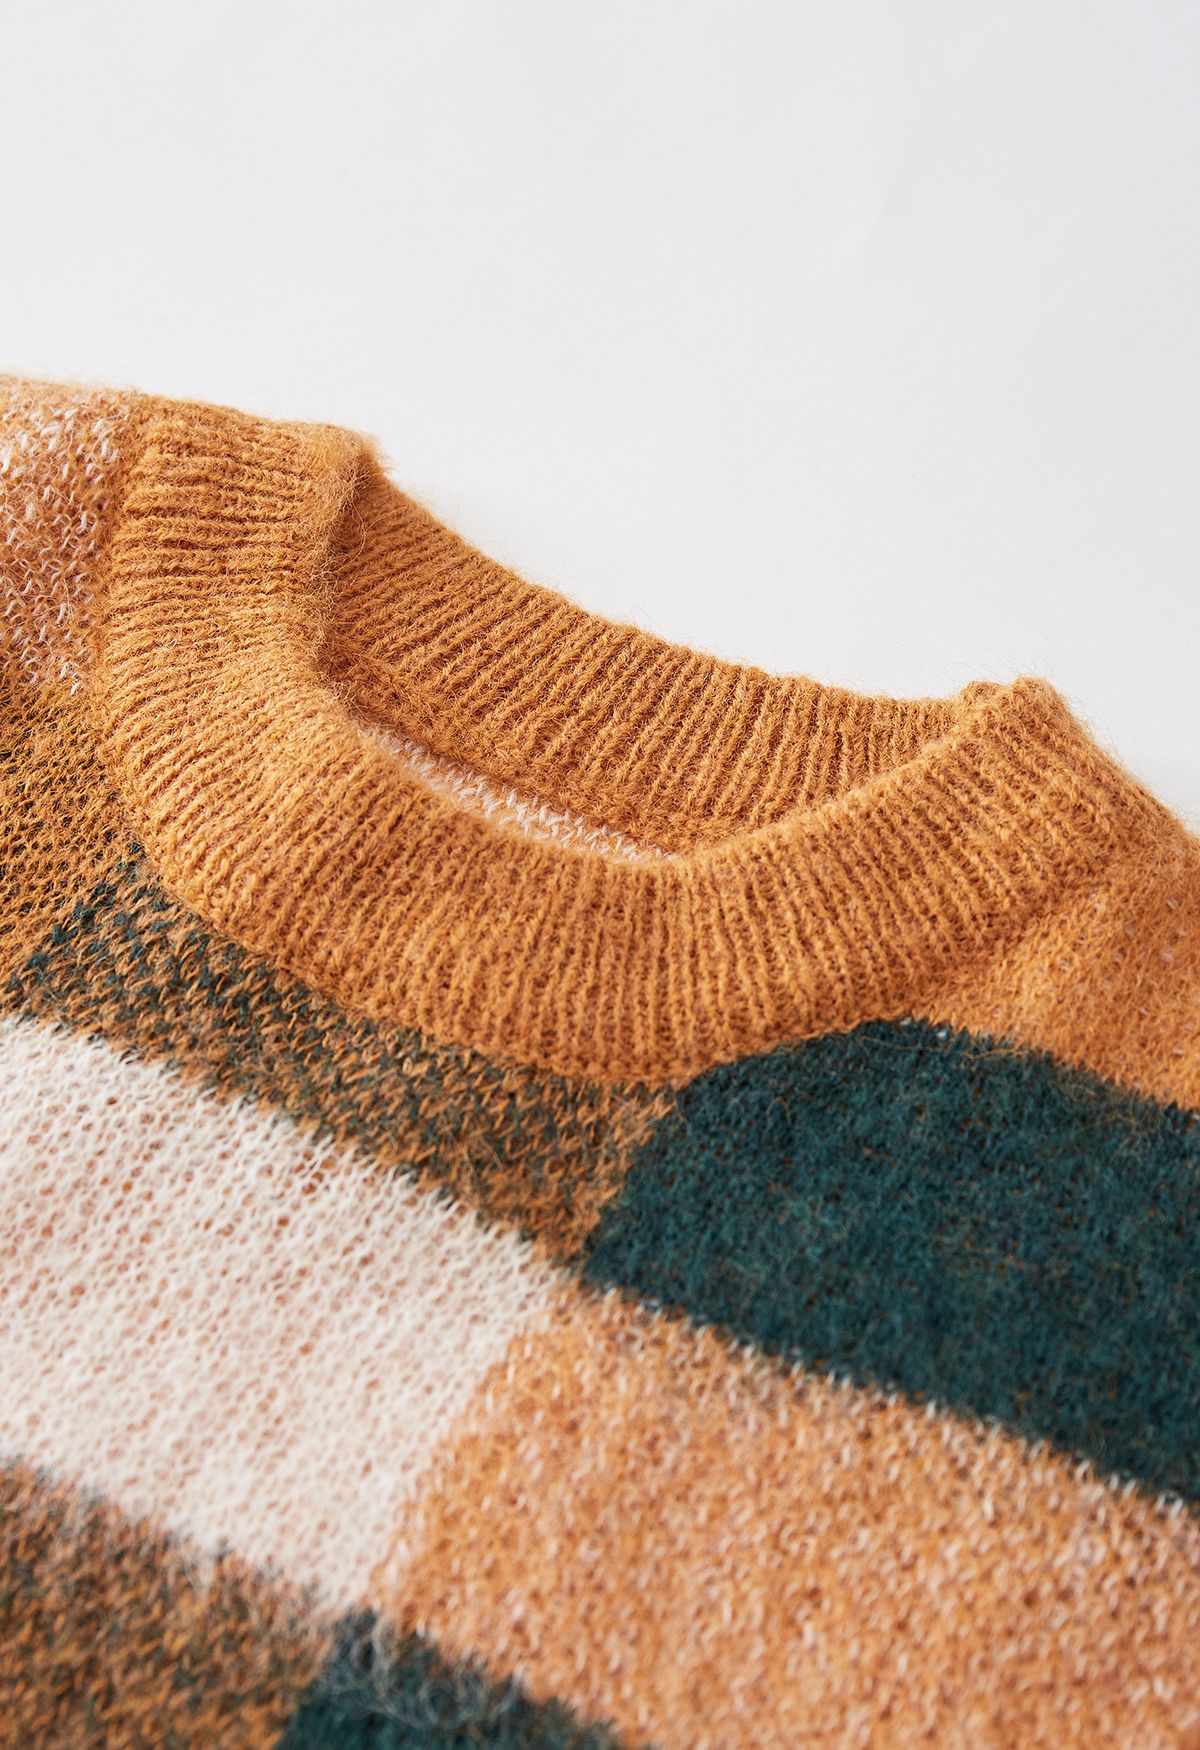 Suéter de punto difuso con patrón de cuadros coloridos